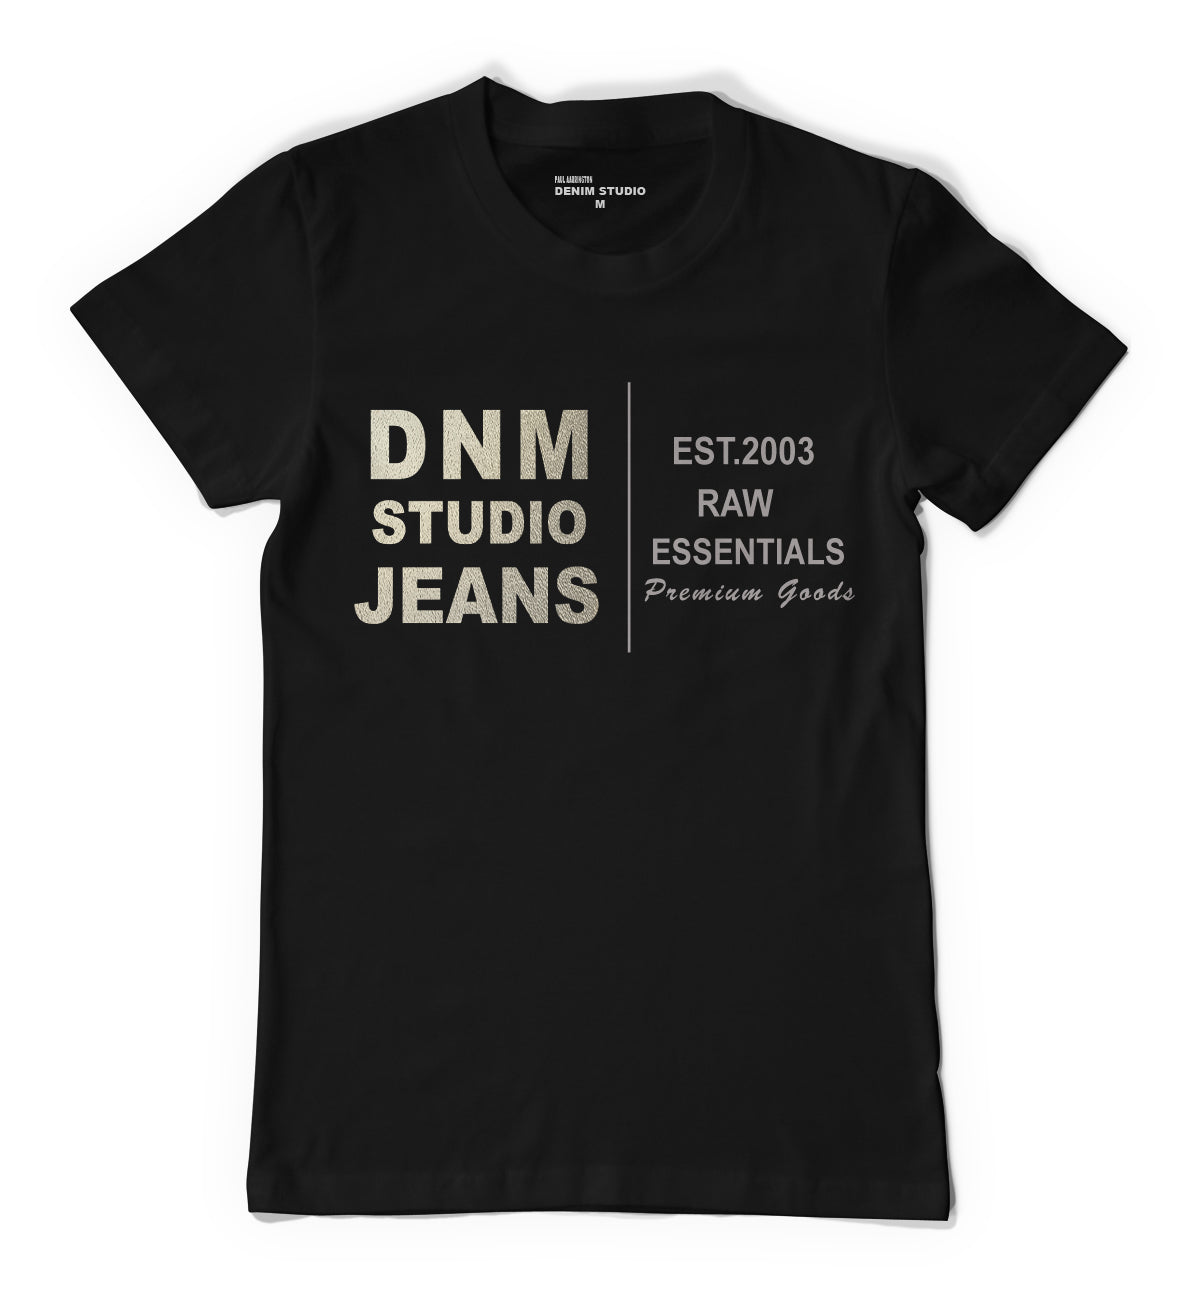 DNM Foiled Again T-Shirt